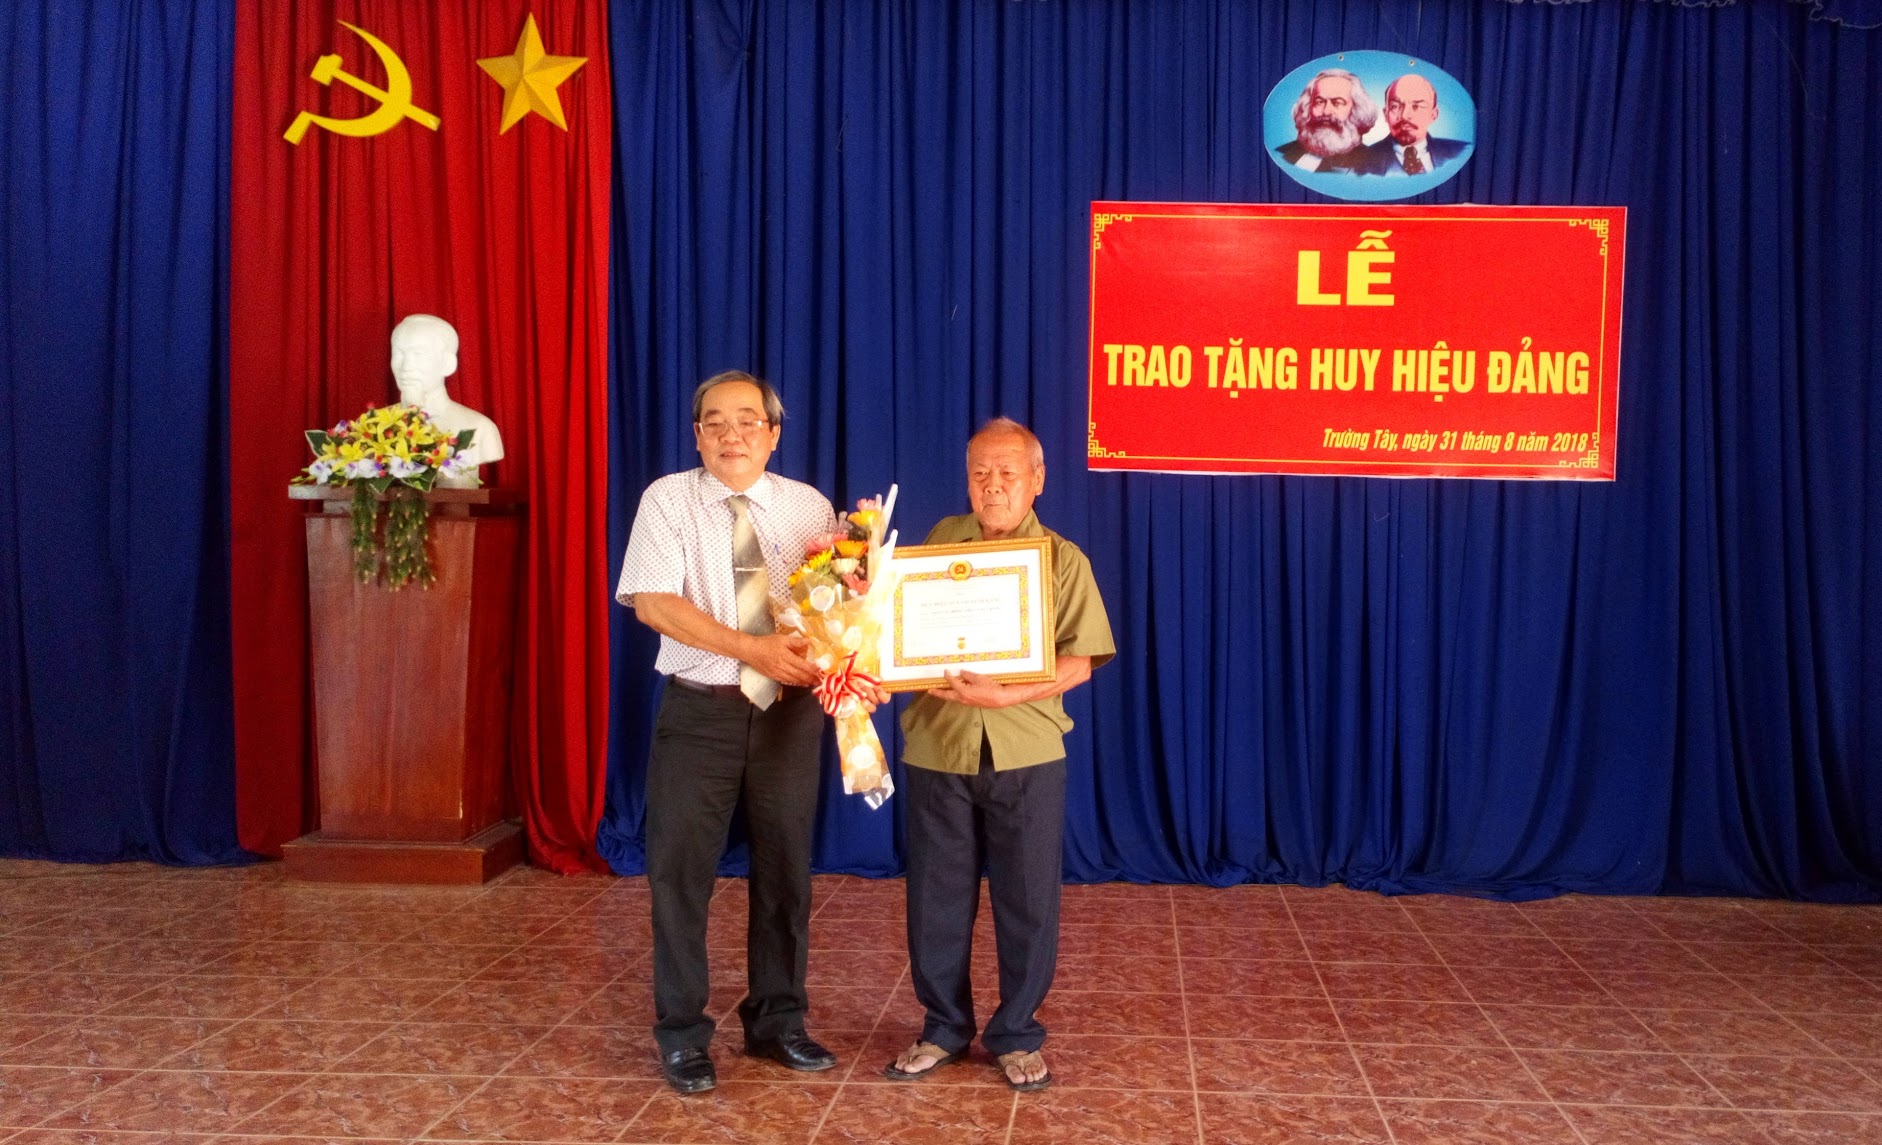 31-9 Phó Bí thư Thường trực Nguyễn Văn Phong trao huy hiệu 55 năm tuổi đảng cho đồng chí Phan Lê Trung.JPG